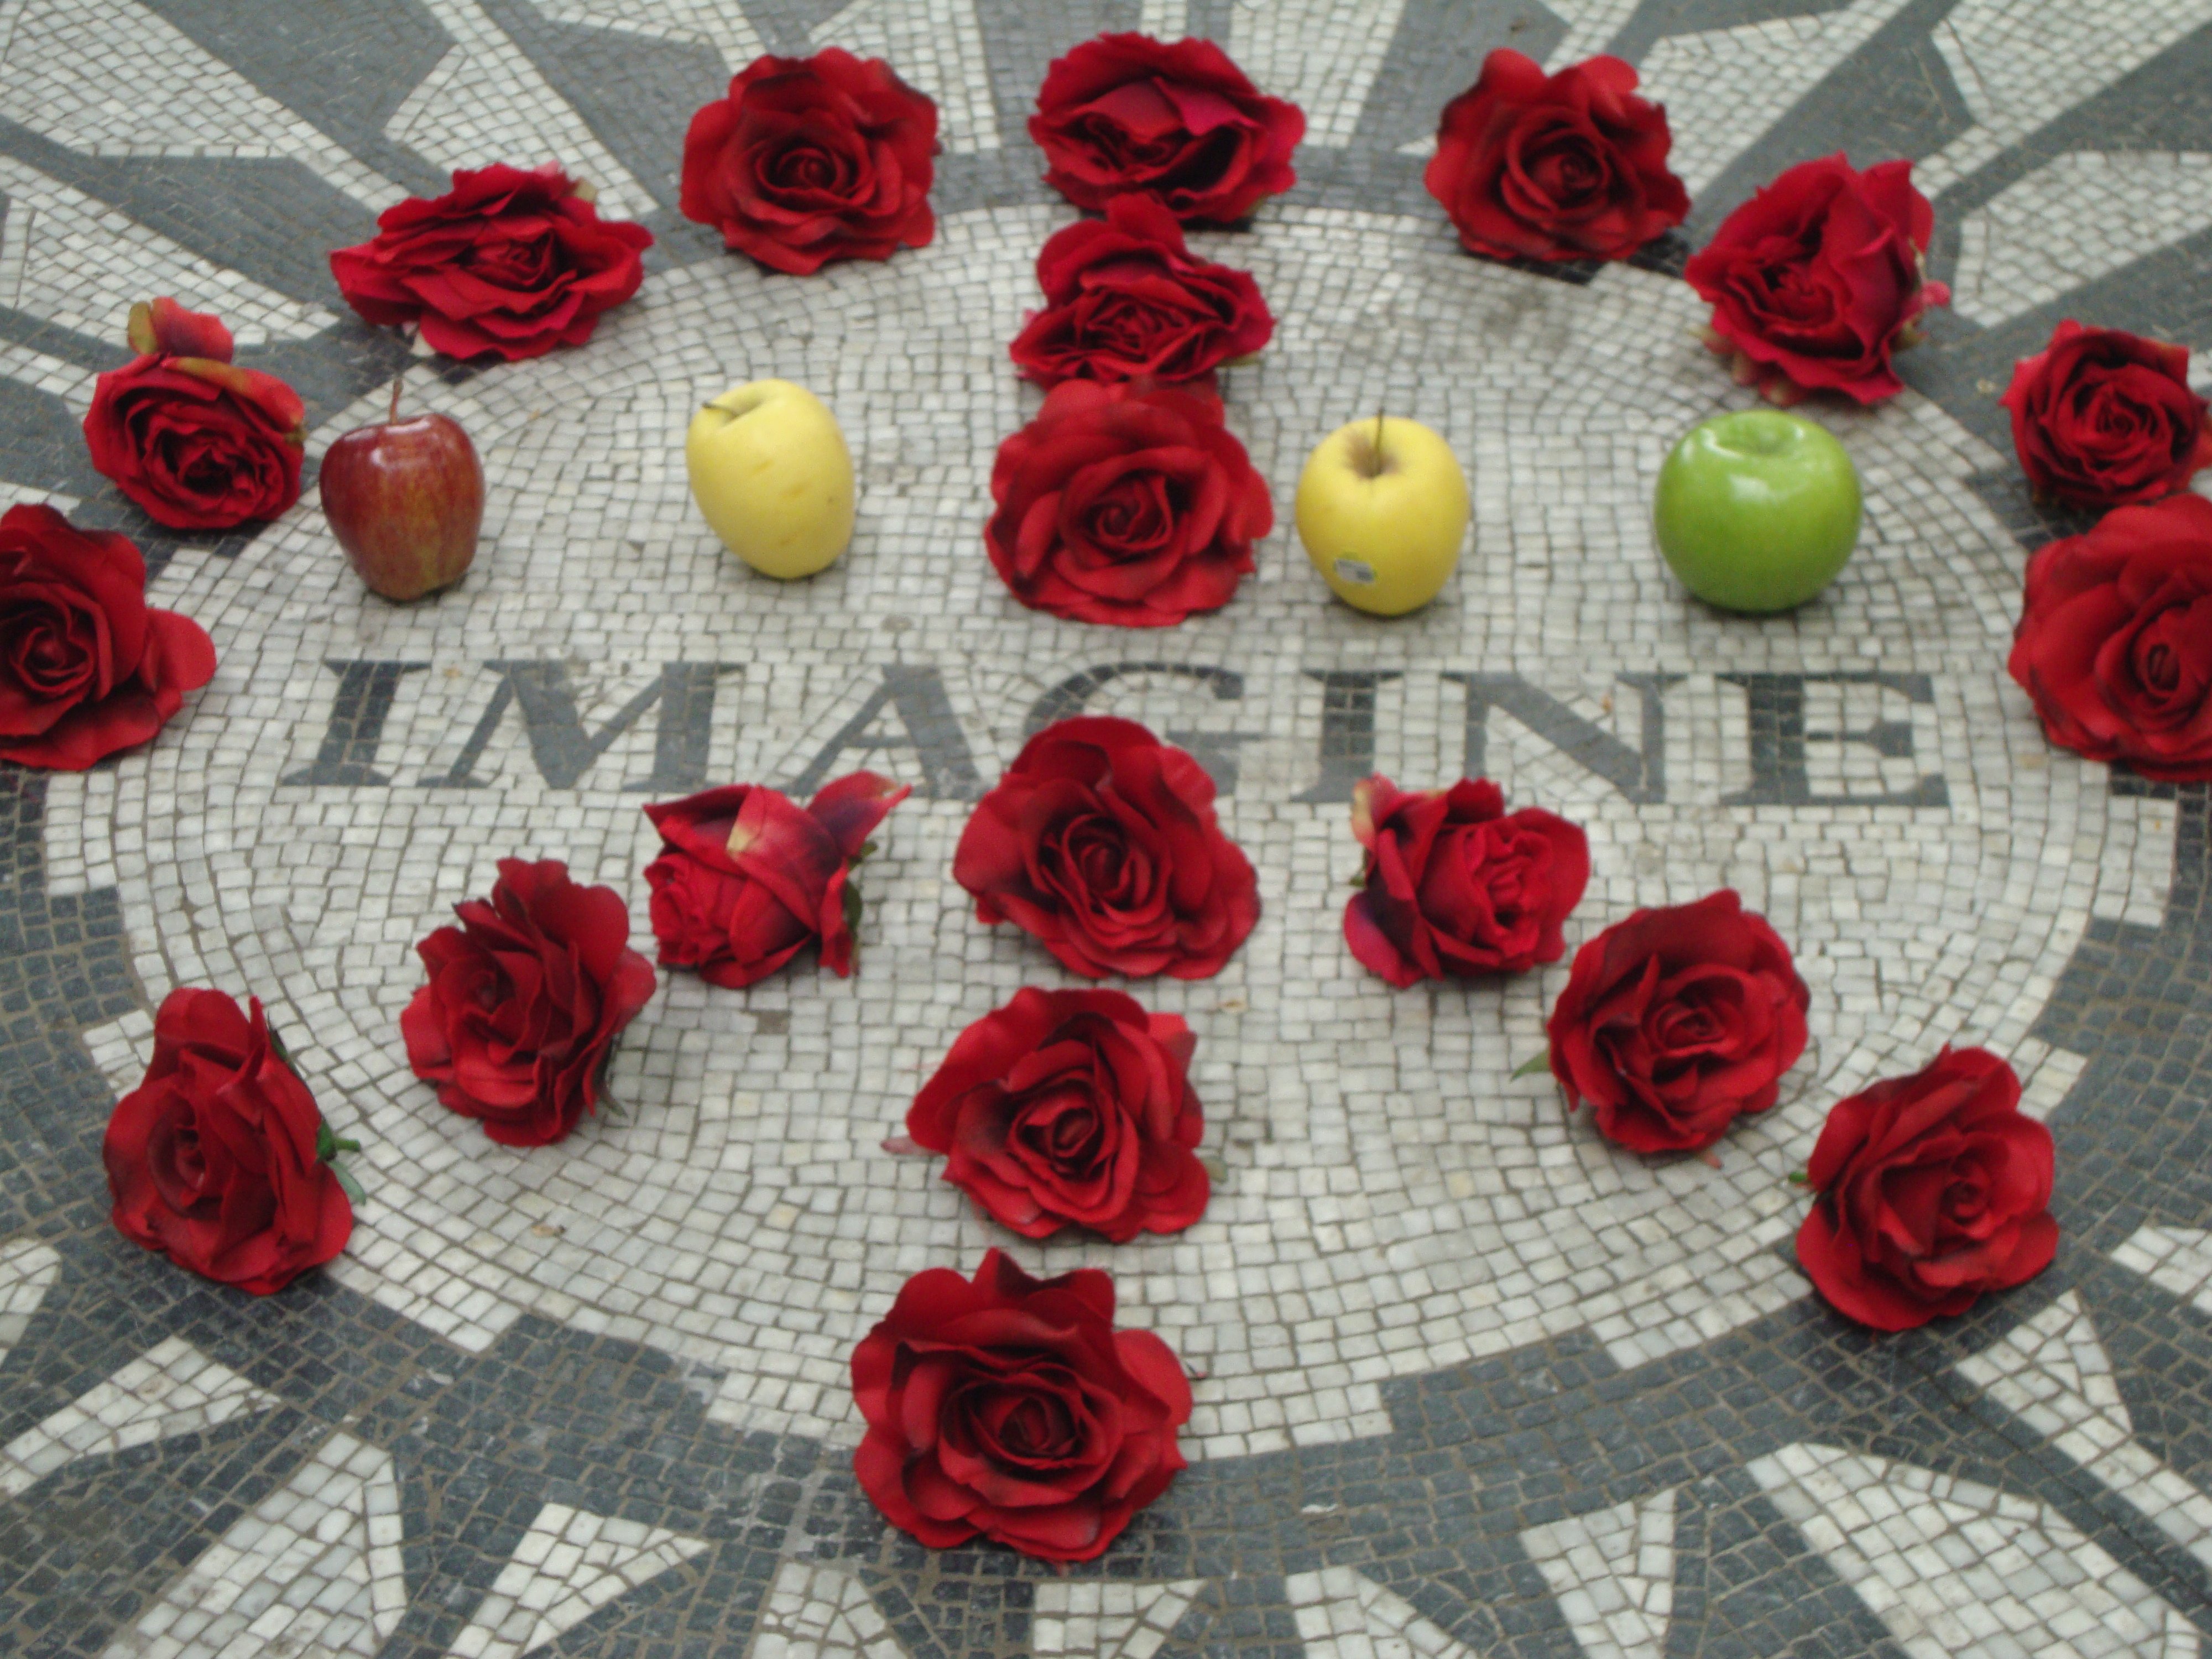 Imagine photo of memorial to John Lenon, Central Park, New York